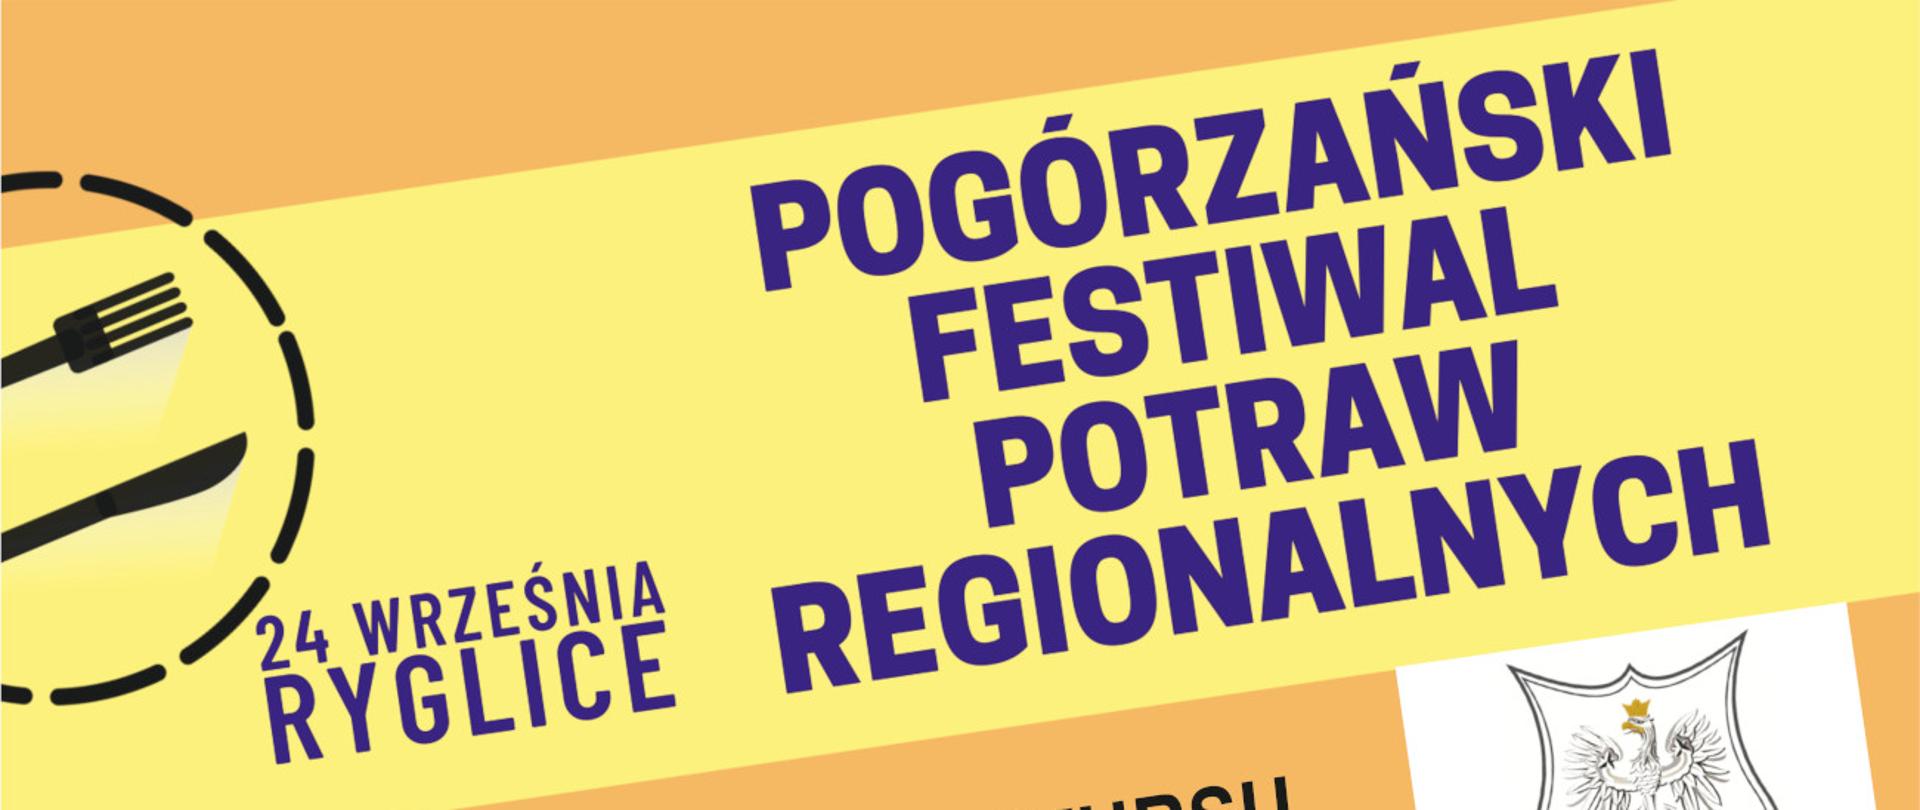 grafika przedstawia plakat informacyjny dotyczący wydarzenia pn. "Pogórzański Festiwal Potraw Regionalnych"